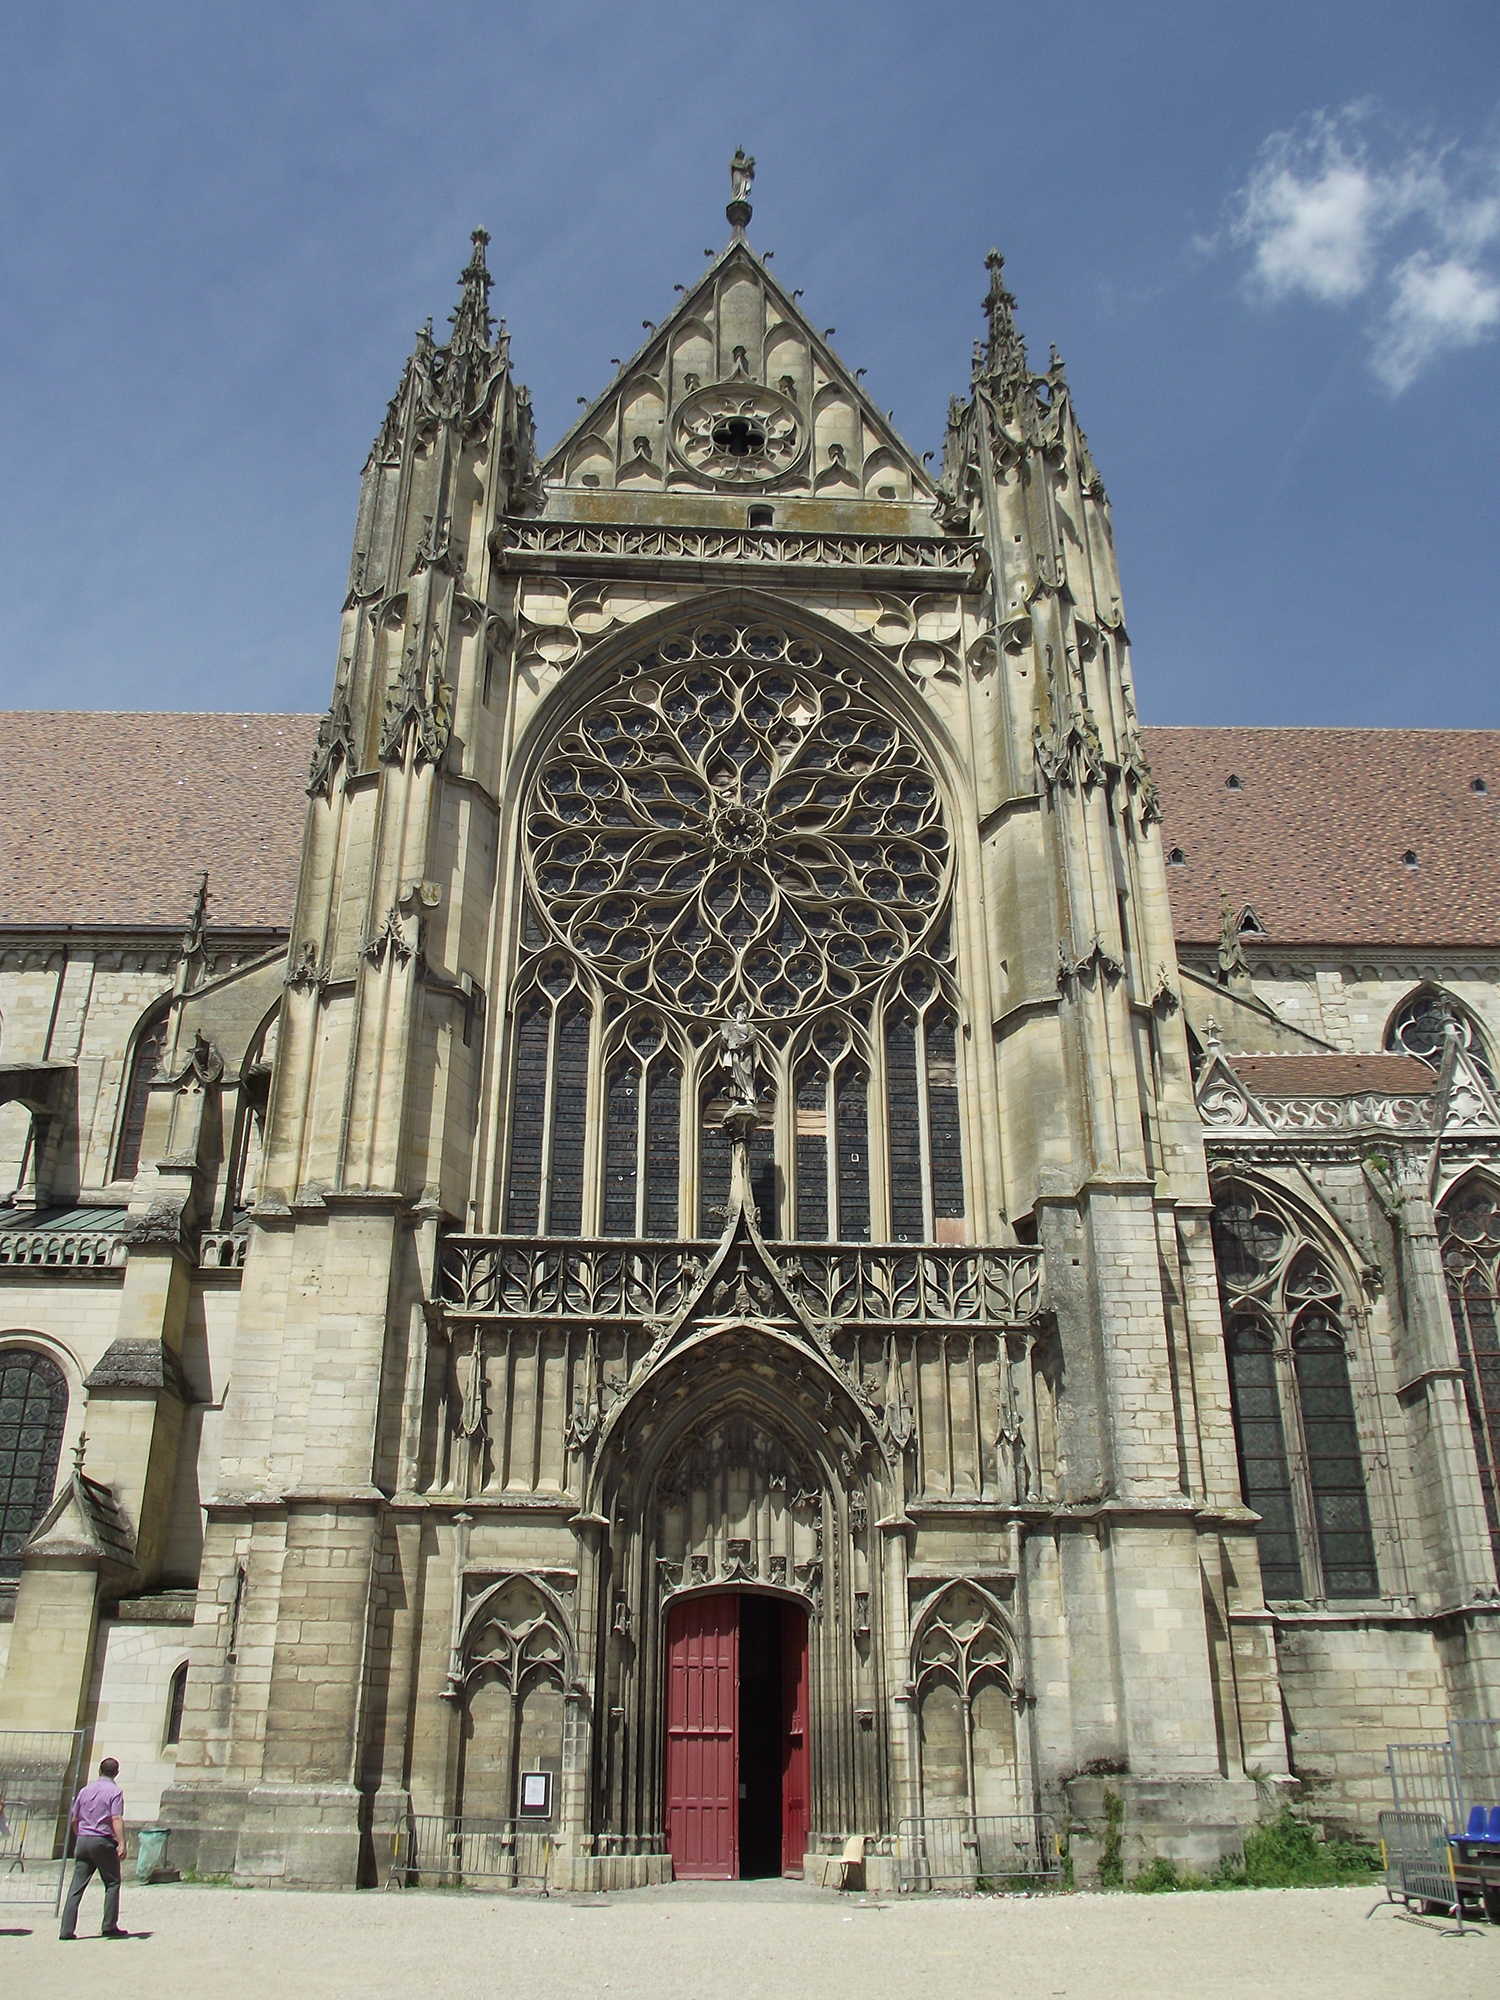 Cathedral of Saint Etienne de Sens